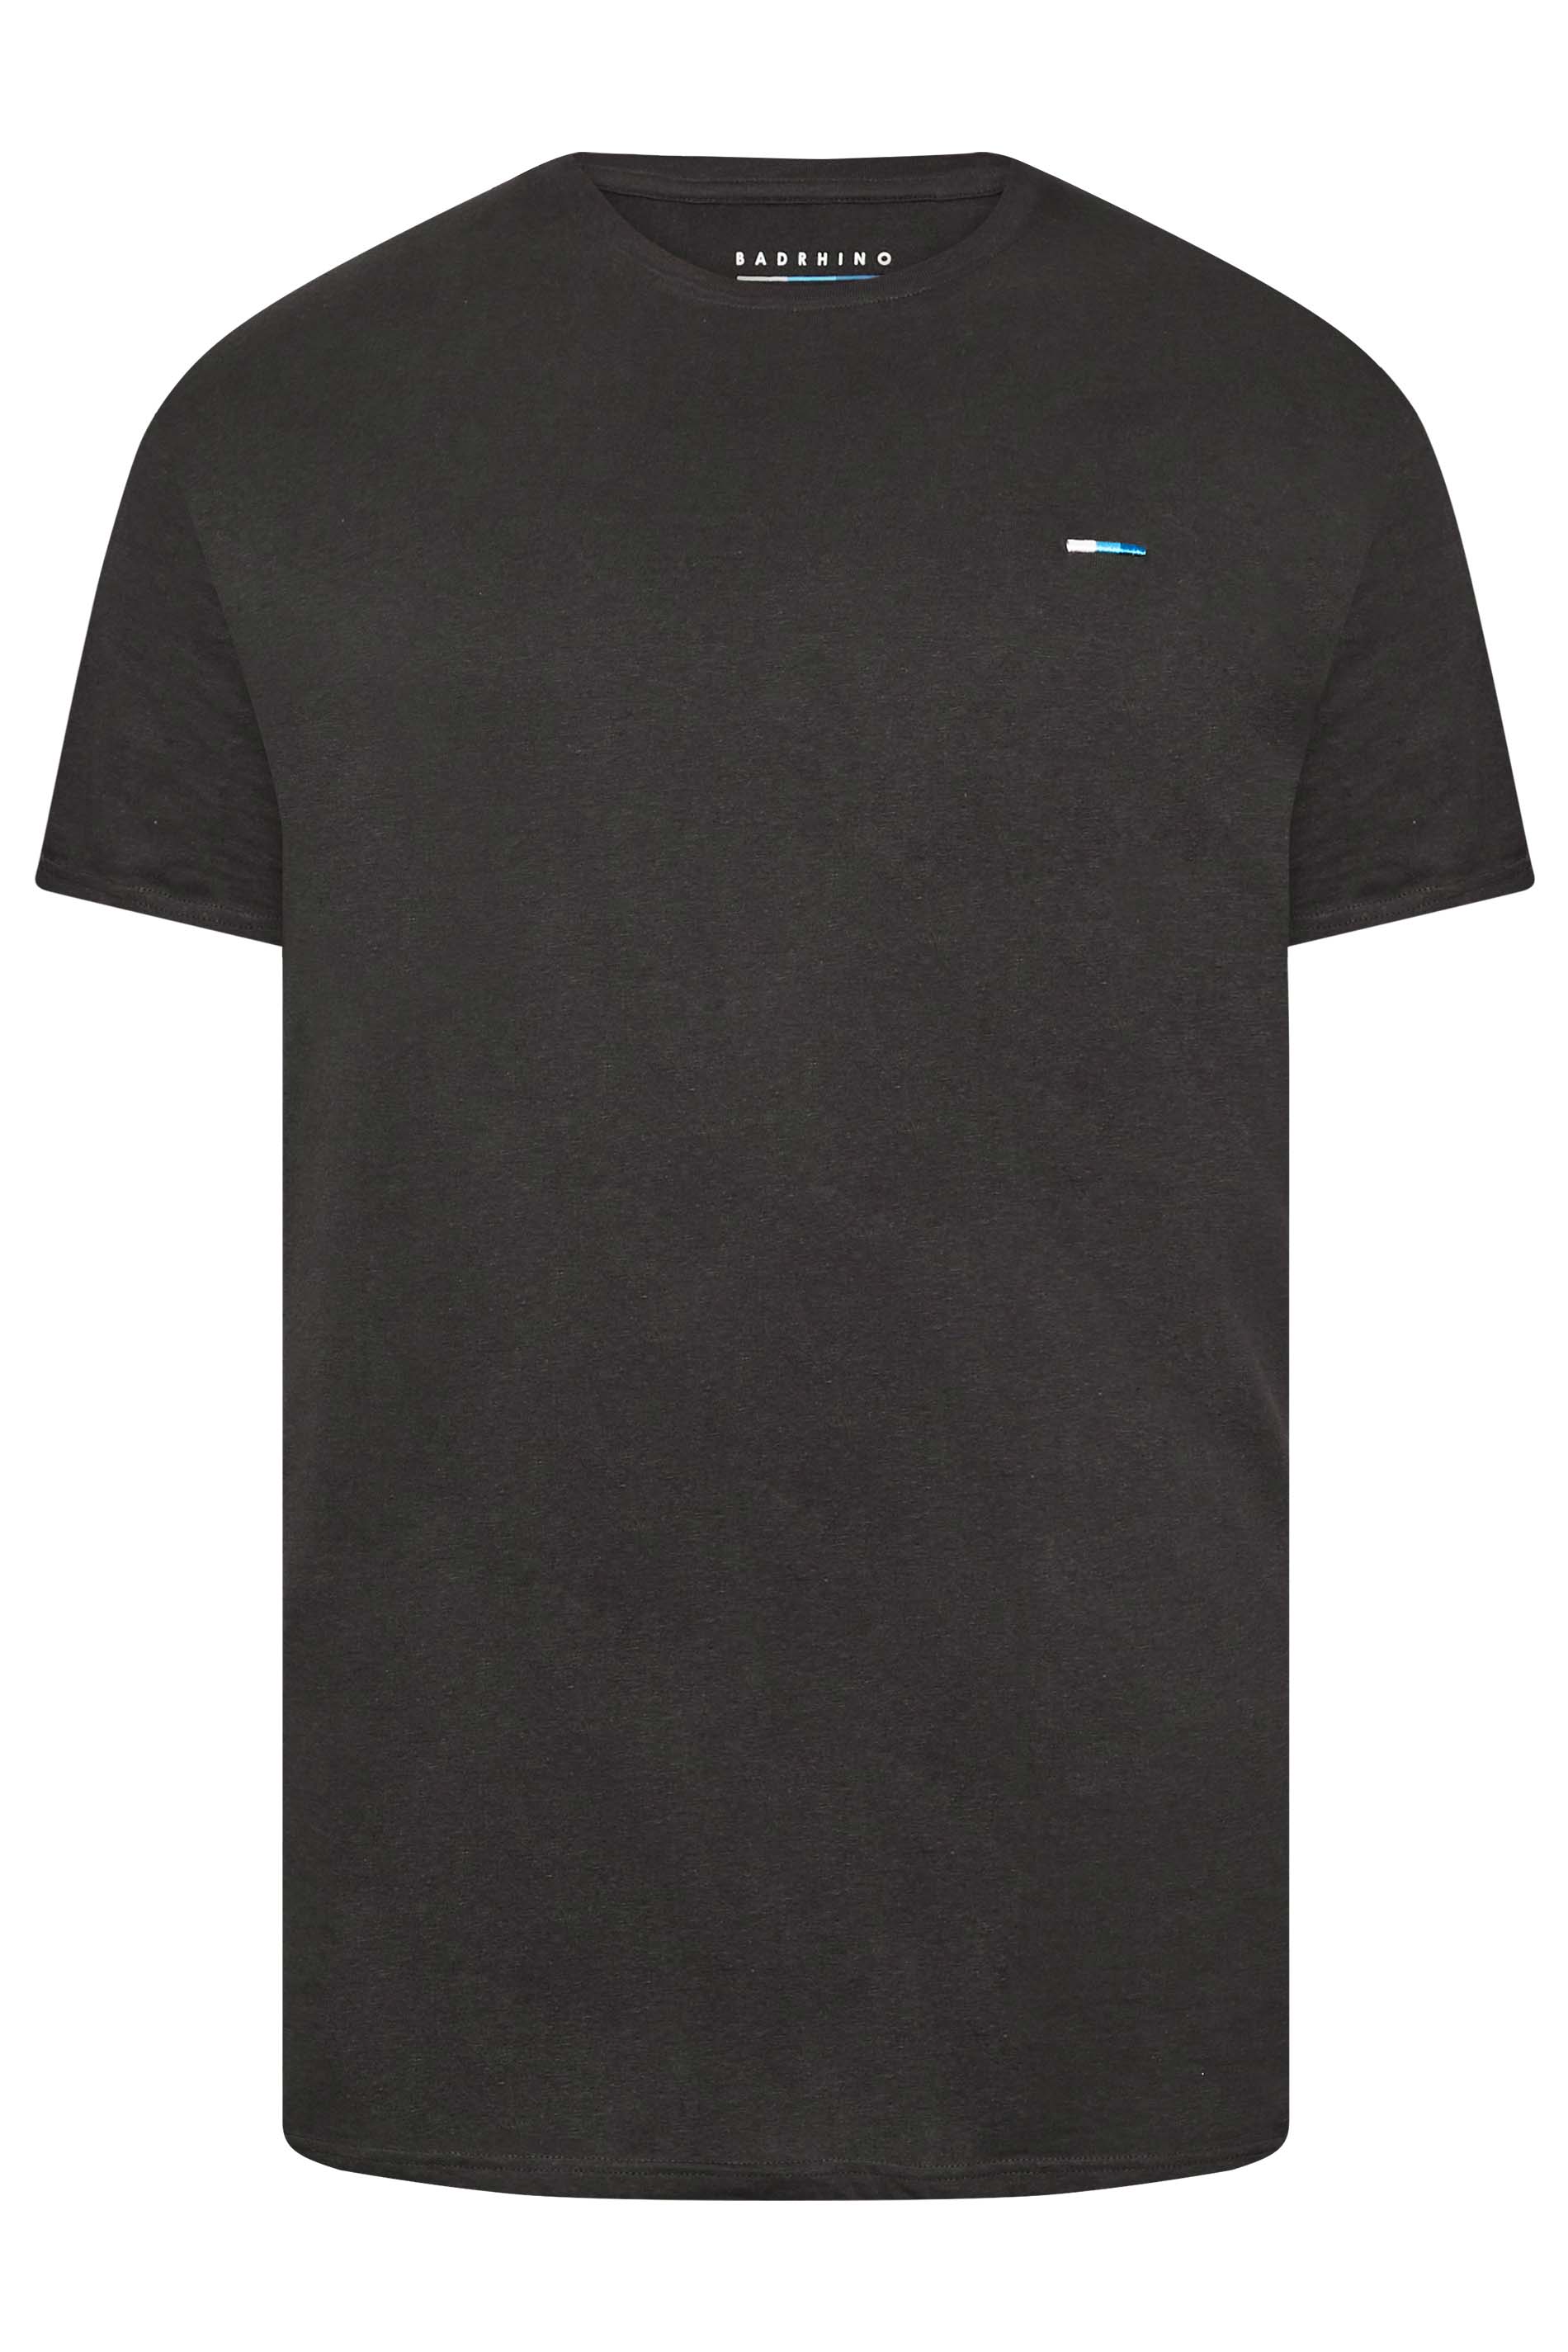 BadRhino Big & Tall Dark Grey Core T-Shirt | BadRhino 3